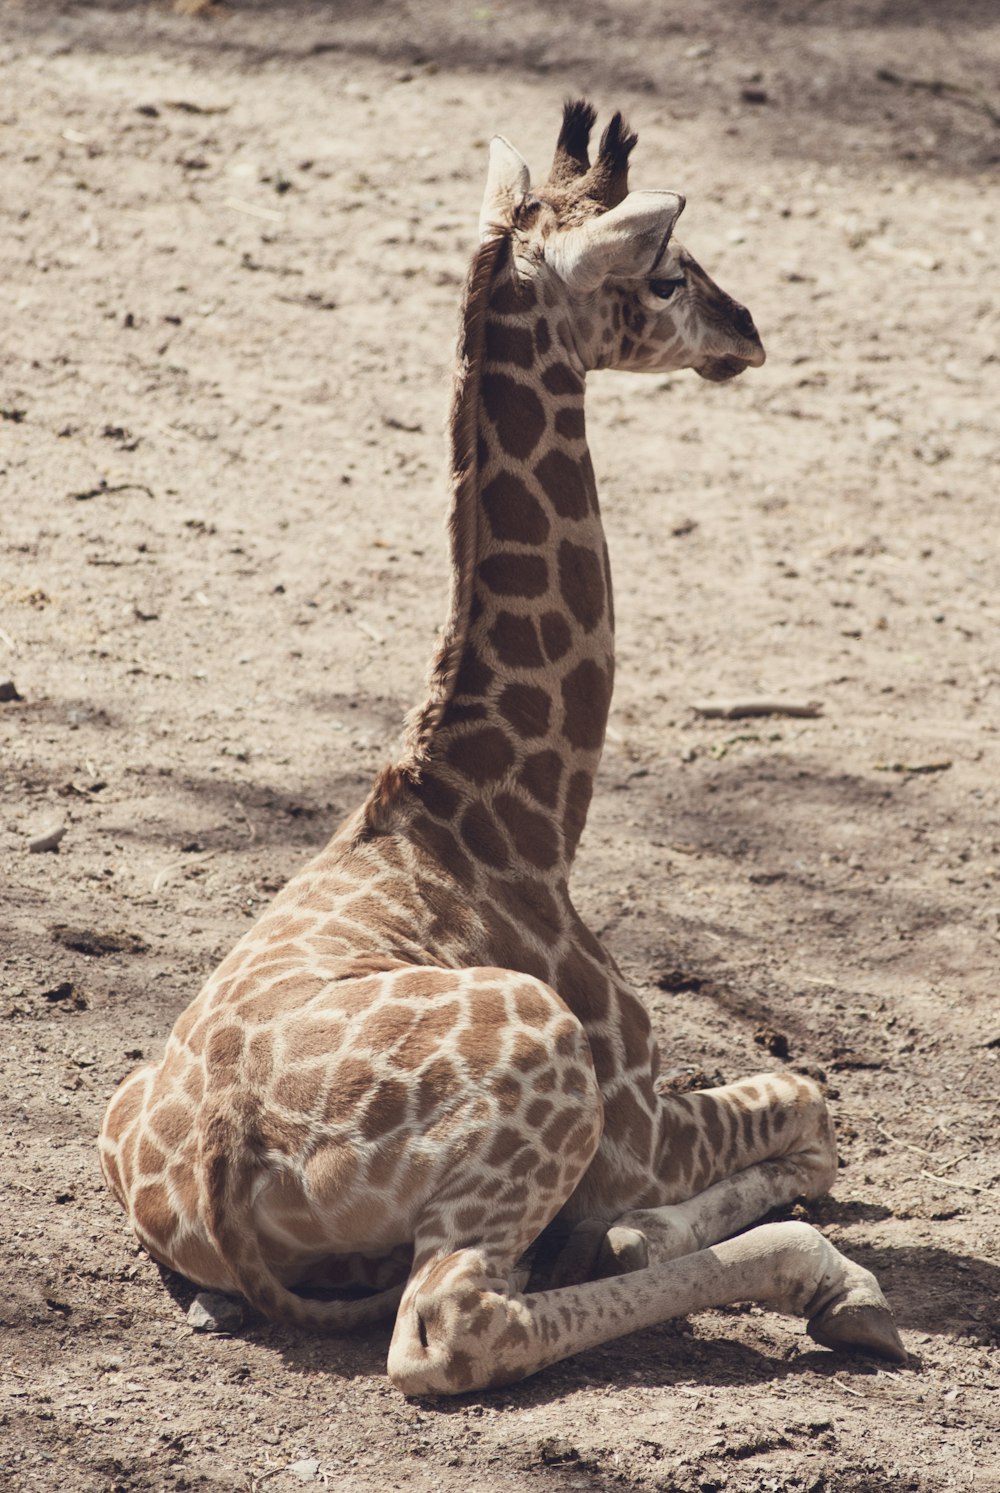 giraffe calf lying on brown soil during daytime